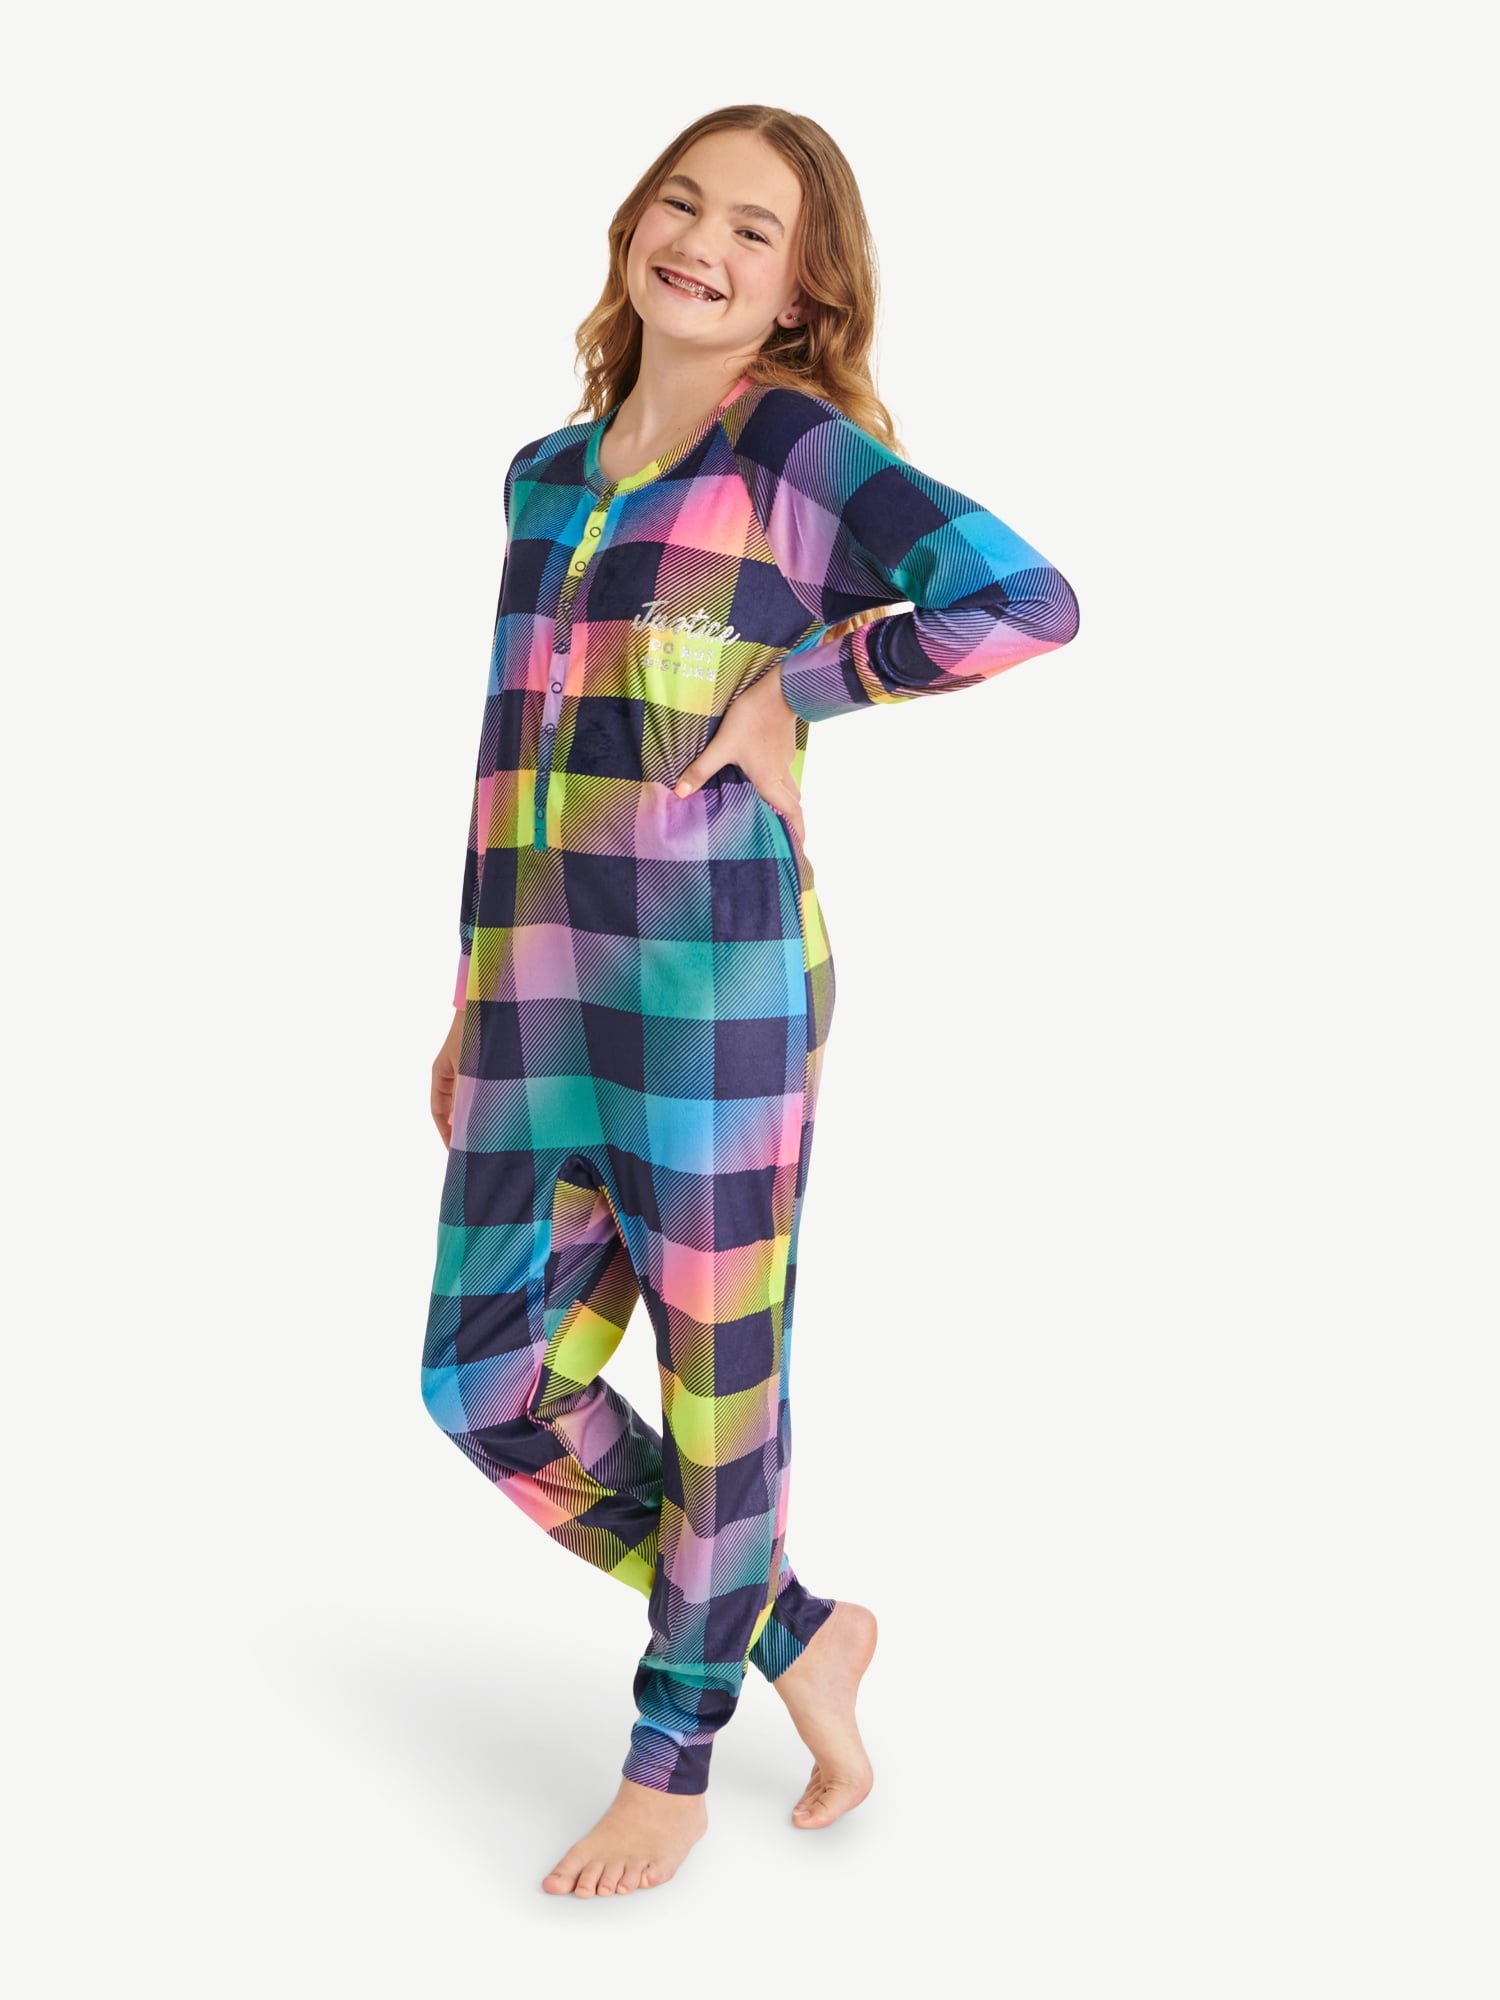 Dodge literally Luminance Justice Girls Button Front Onesie Sleepwear Pajama, Sizes 5-18 & Plus -  Walmart.com